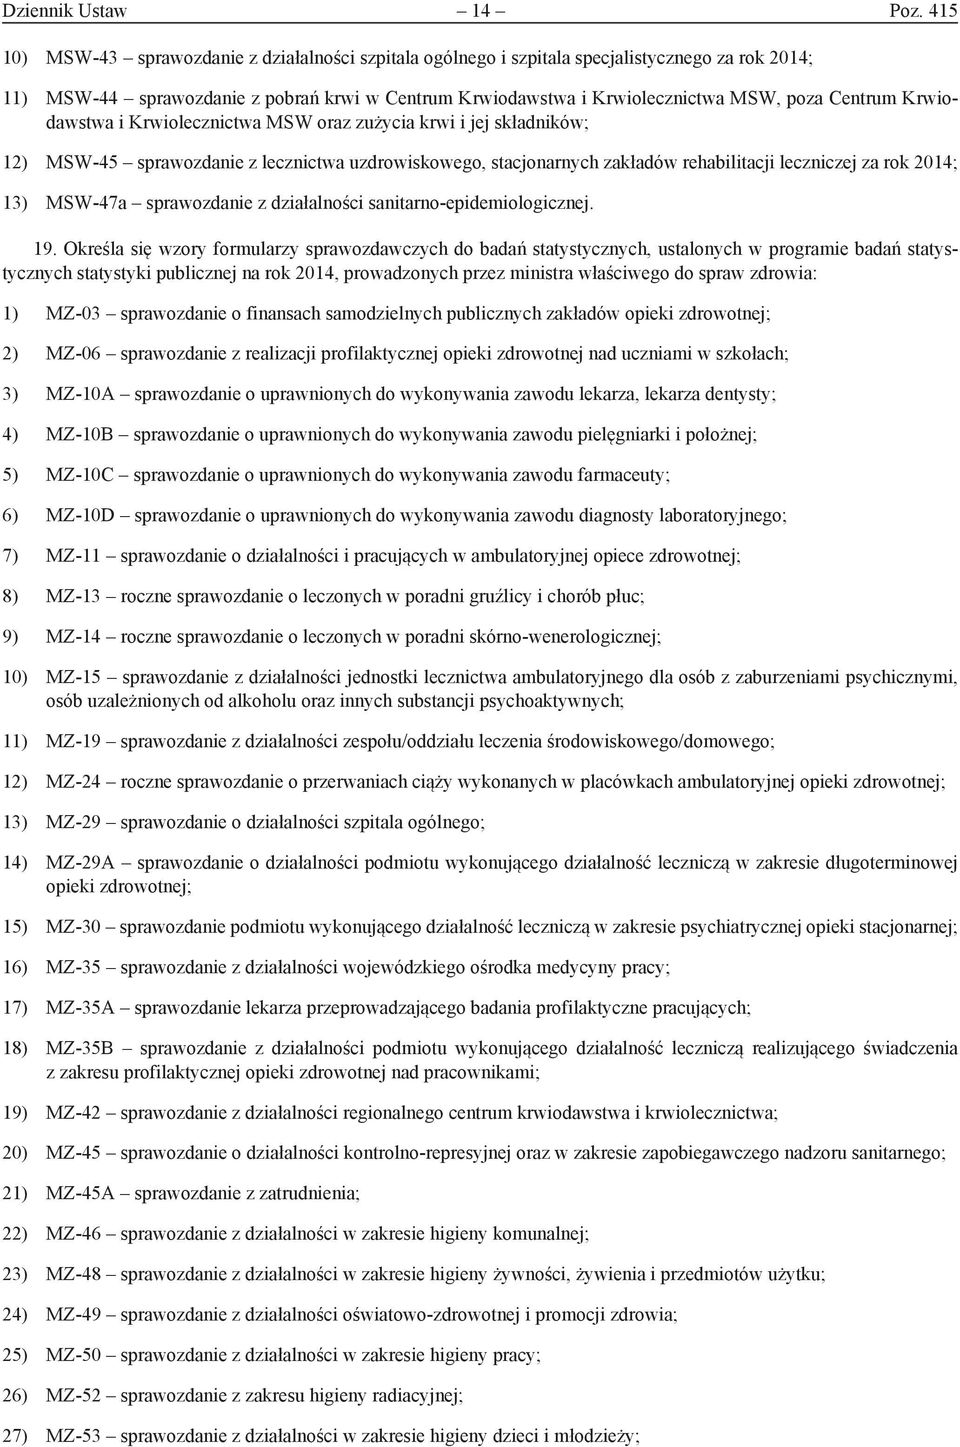 Krwiodawstwa i Krwiolecznictwa MSW oraz zużycia krwi i jej składników; 12) MSW-45 sprawozdanie z lecznictwa uzdrowiskowego, stacjonarnych zakładów rehabilitacji leczniczej za rok 2014; 13) MSW-47a